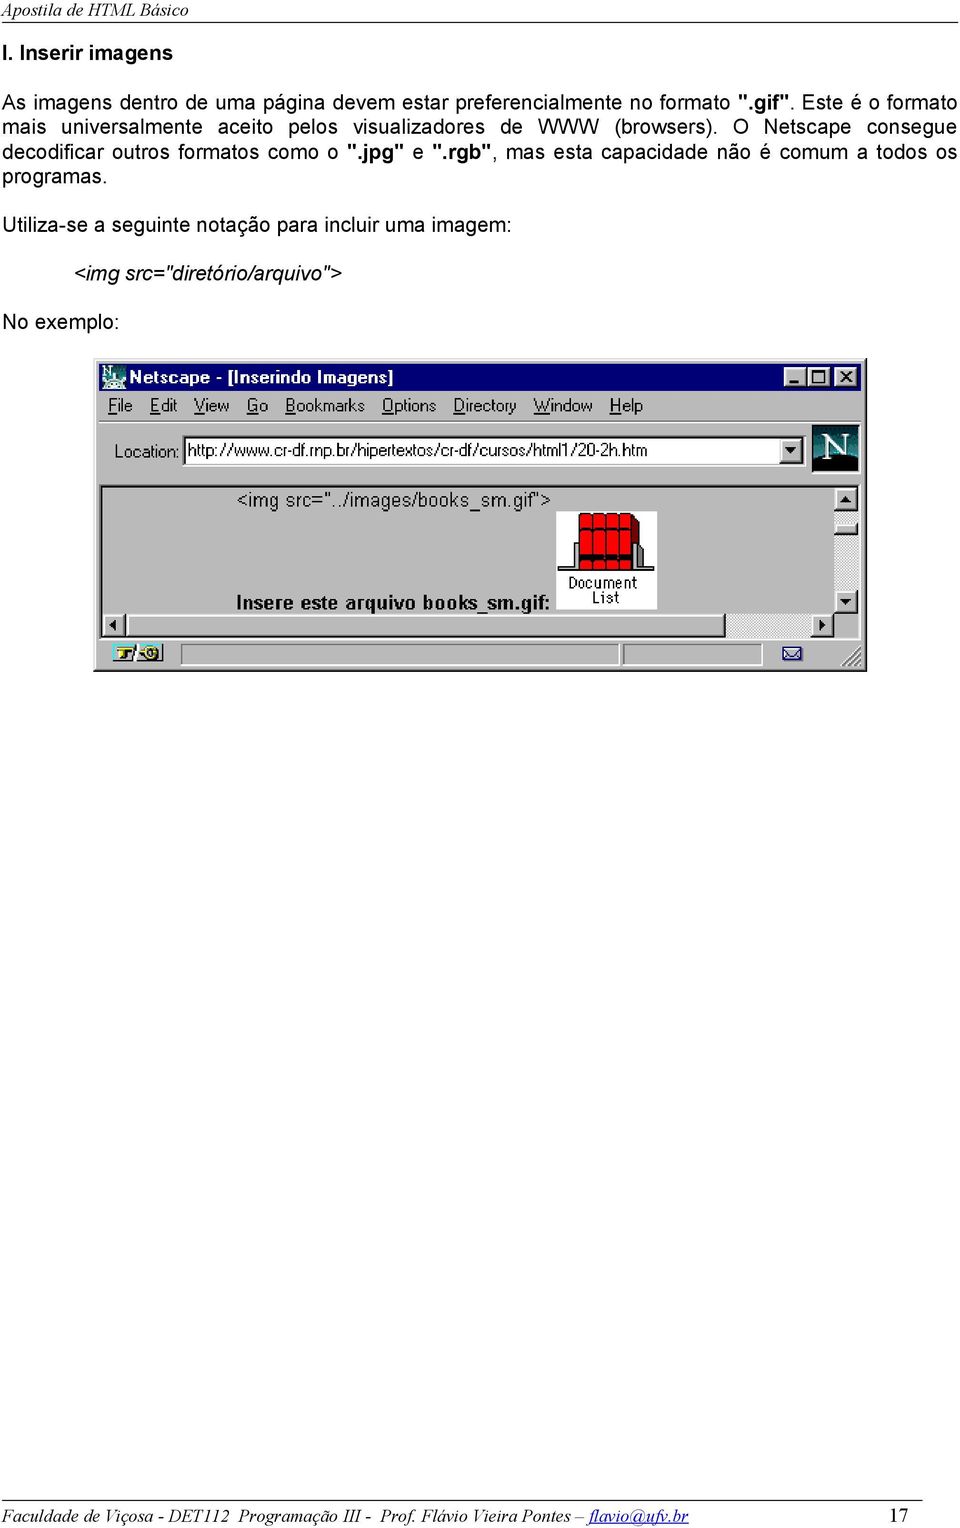 O Netscape consegue decodificar outros formatos como o ".jpg" e ".rgb", mas esta capacidade não é comum a todos os programas.